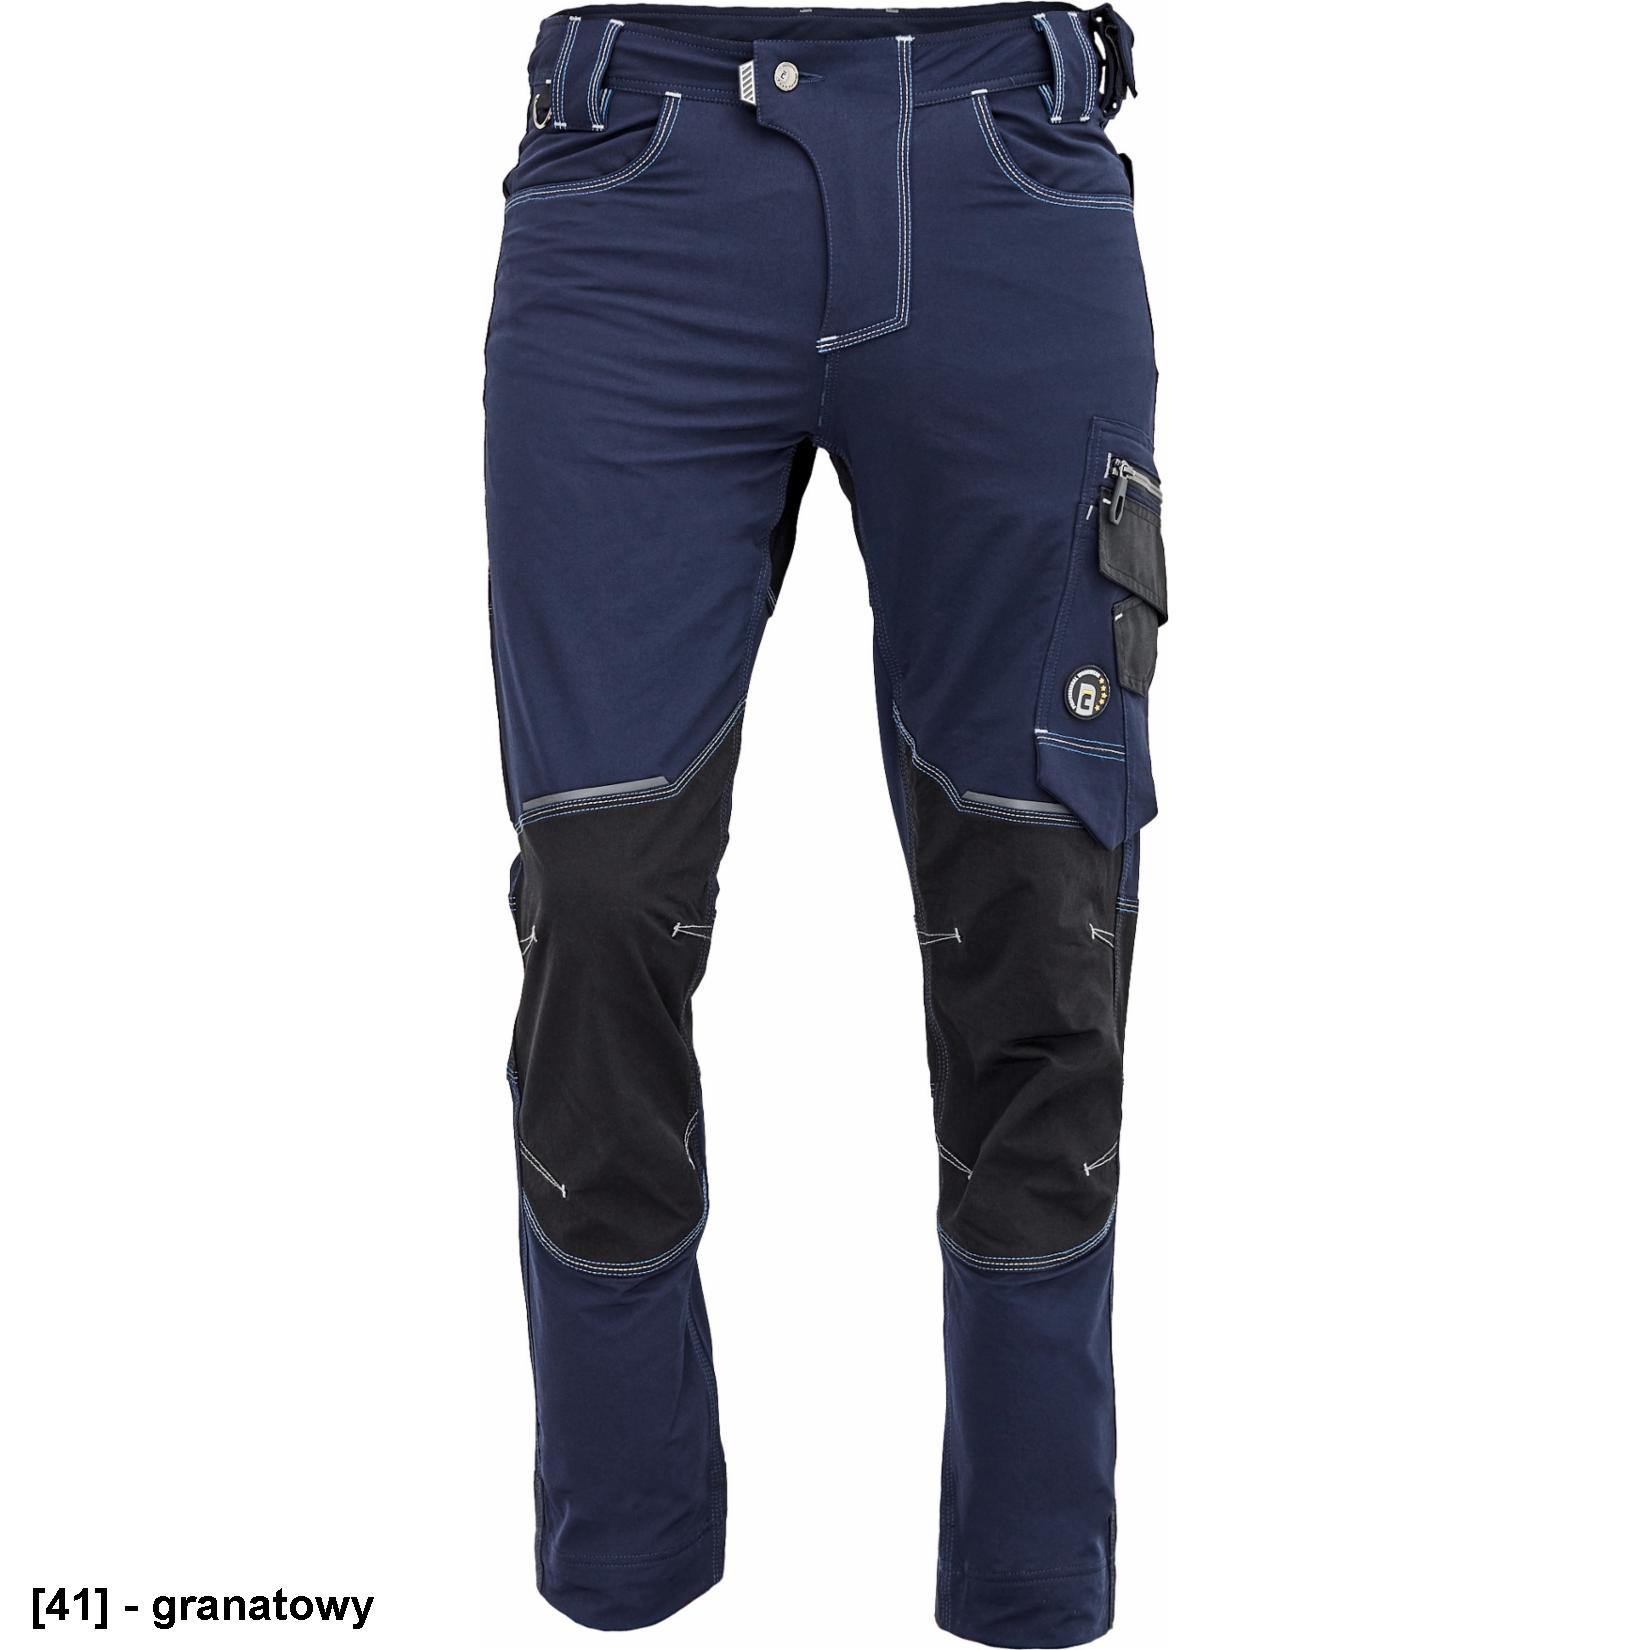 NEURUM PERFORMANCE spodnie - męskie spodnie robocze, elastyczny materiał TrifibetexPRO®, 6 kieszeni, odblaski - 4 kolory - 46-64.